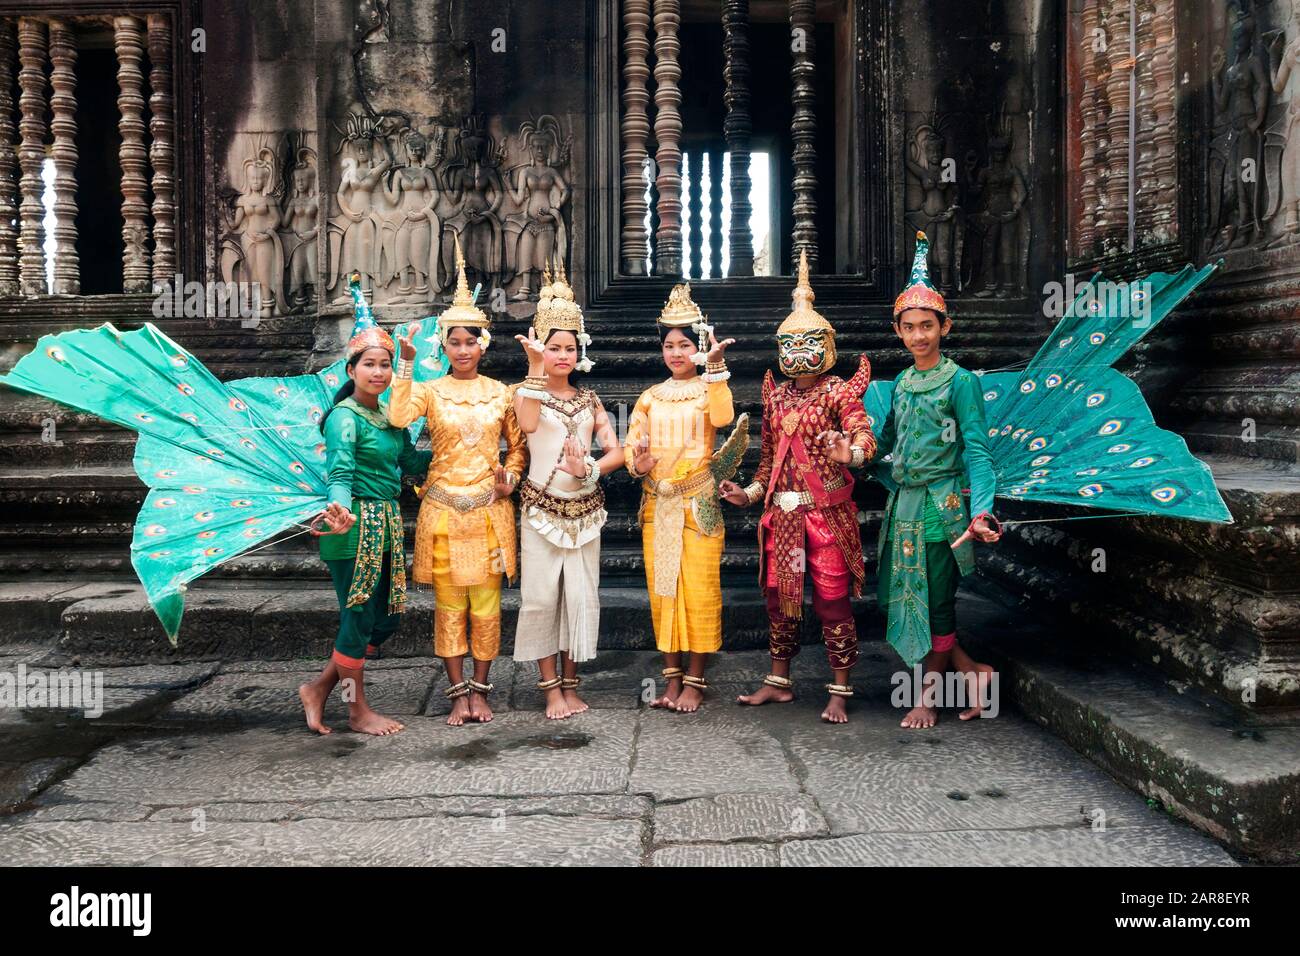 Les danseurs Apsara traditionnels en costumes colorés avec des fans frappants posent devant les ruines d'Angkor Wat, Siem Reap, Cambodge Banque D'Images